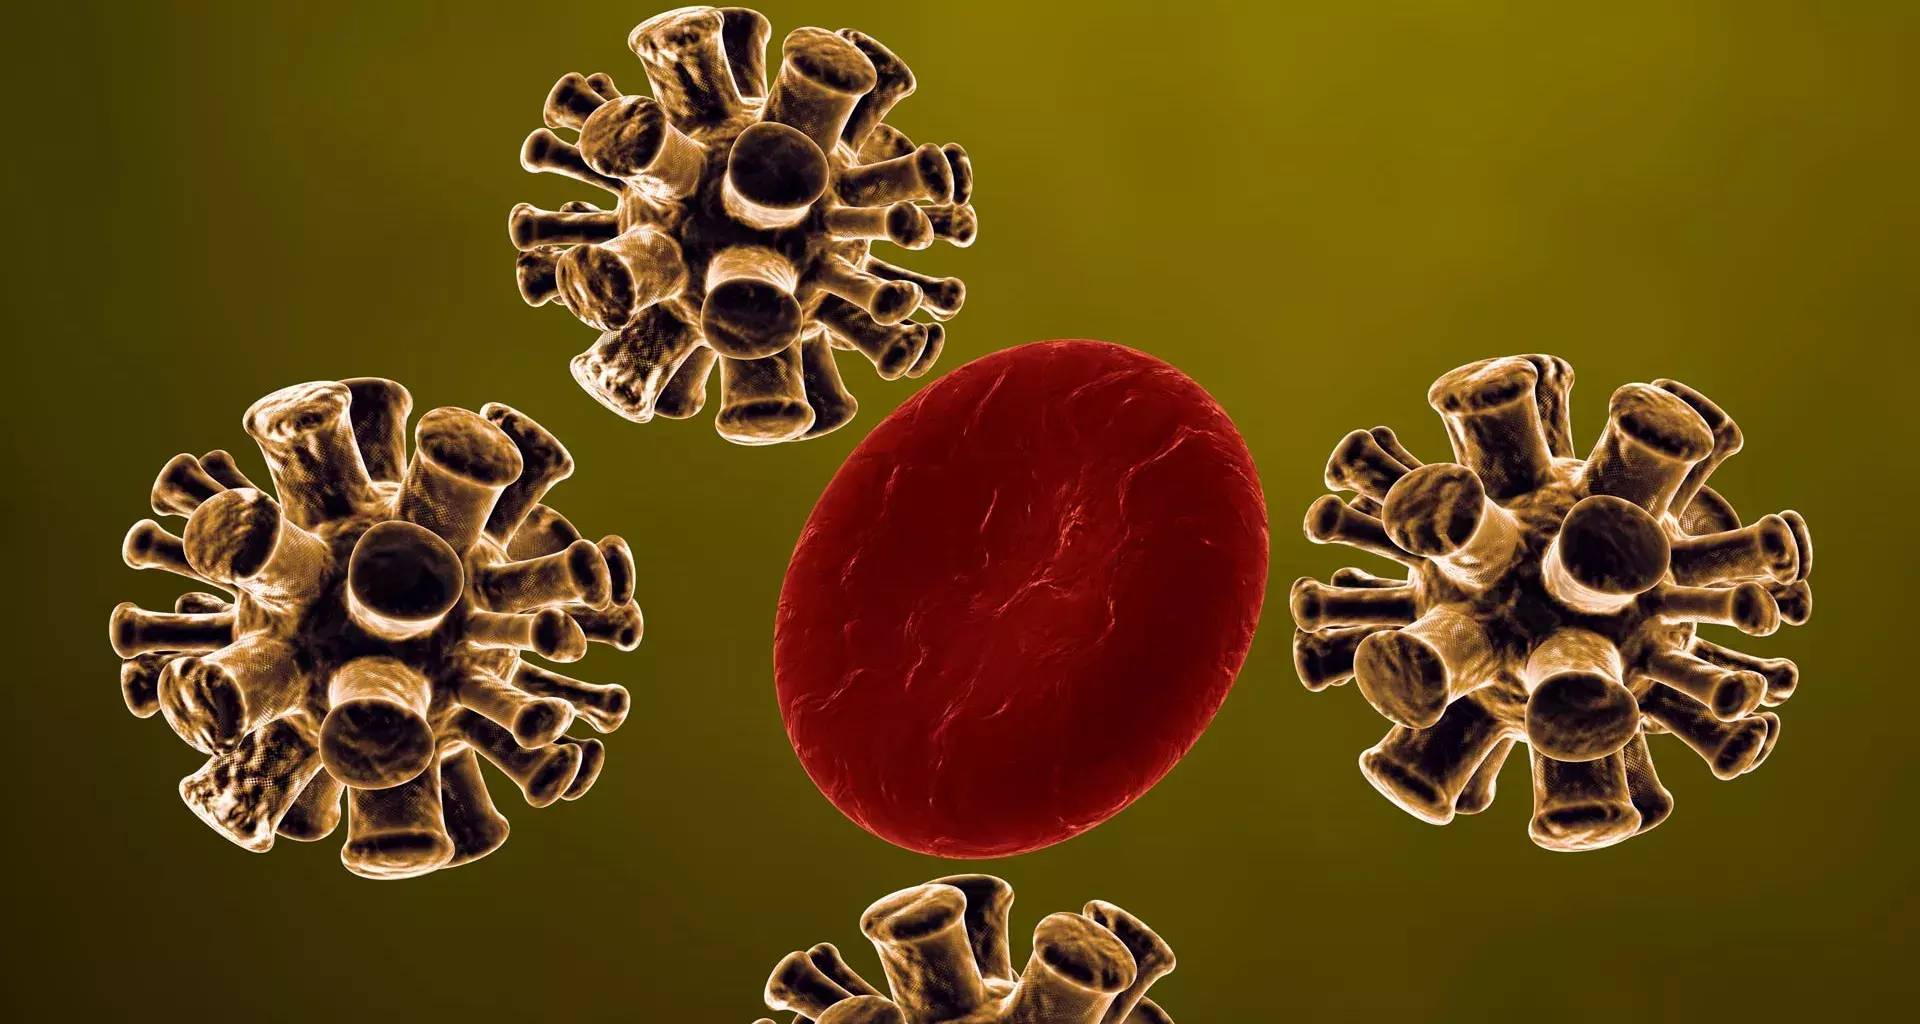 Here’s how the coronavirus attacks the human body